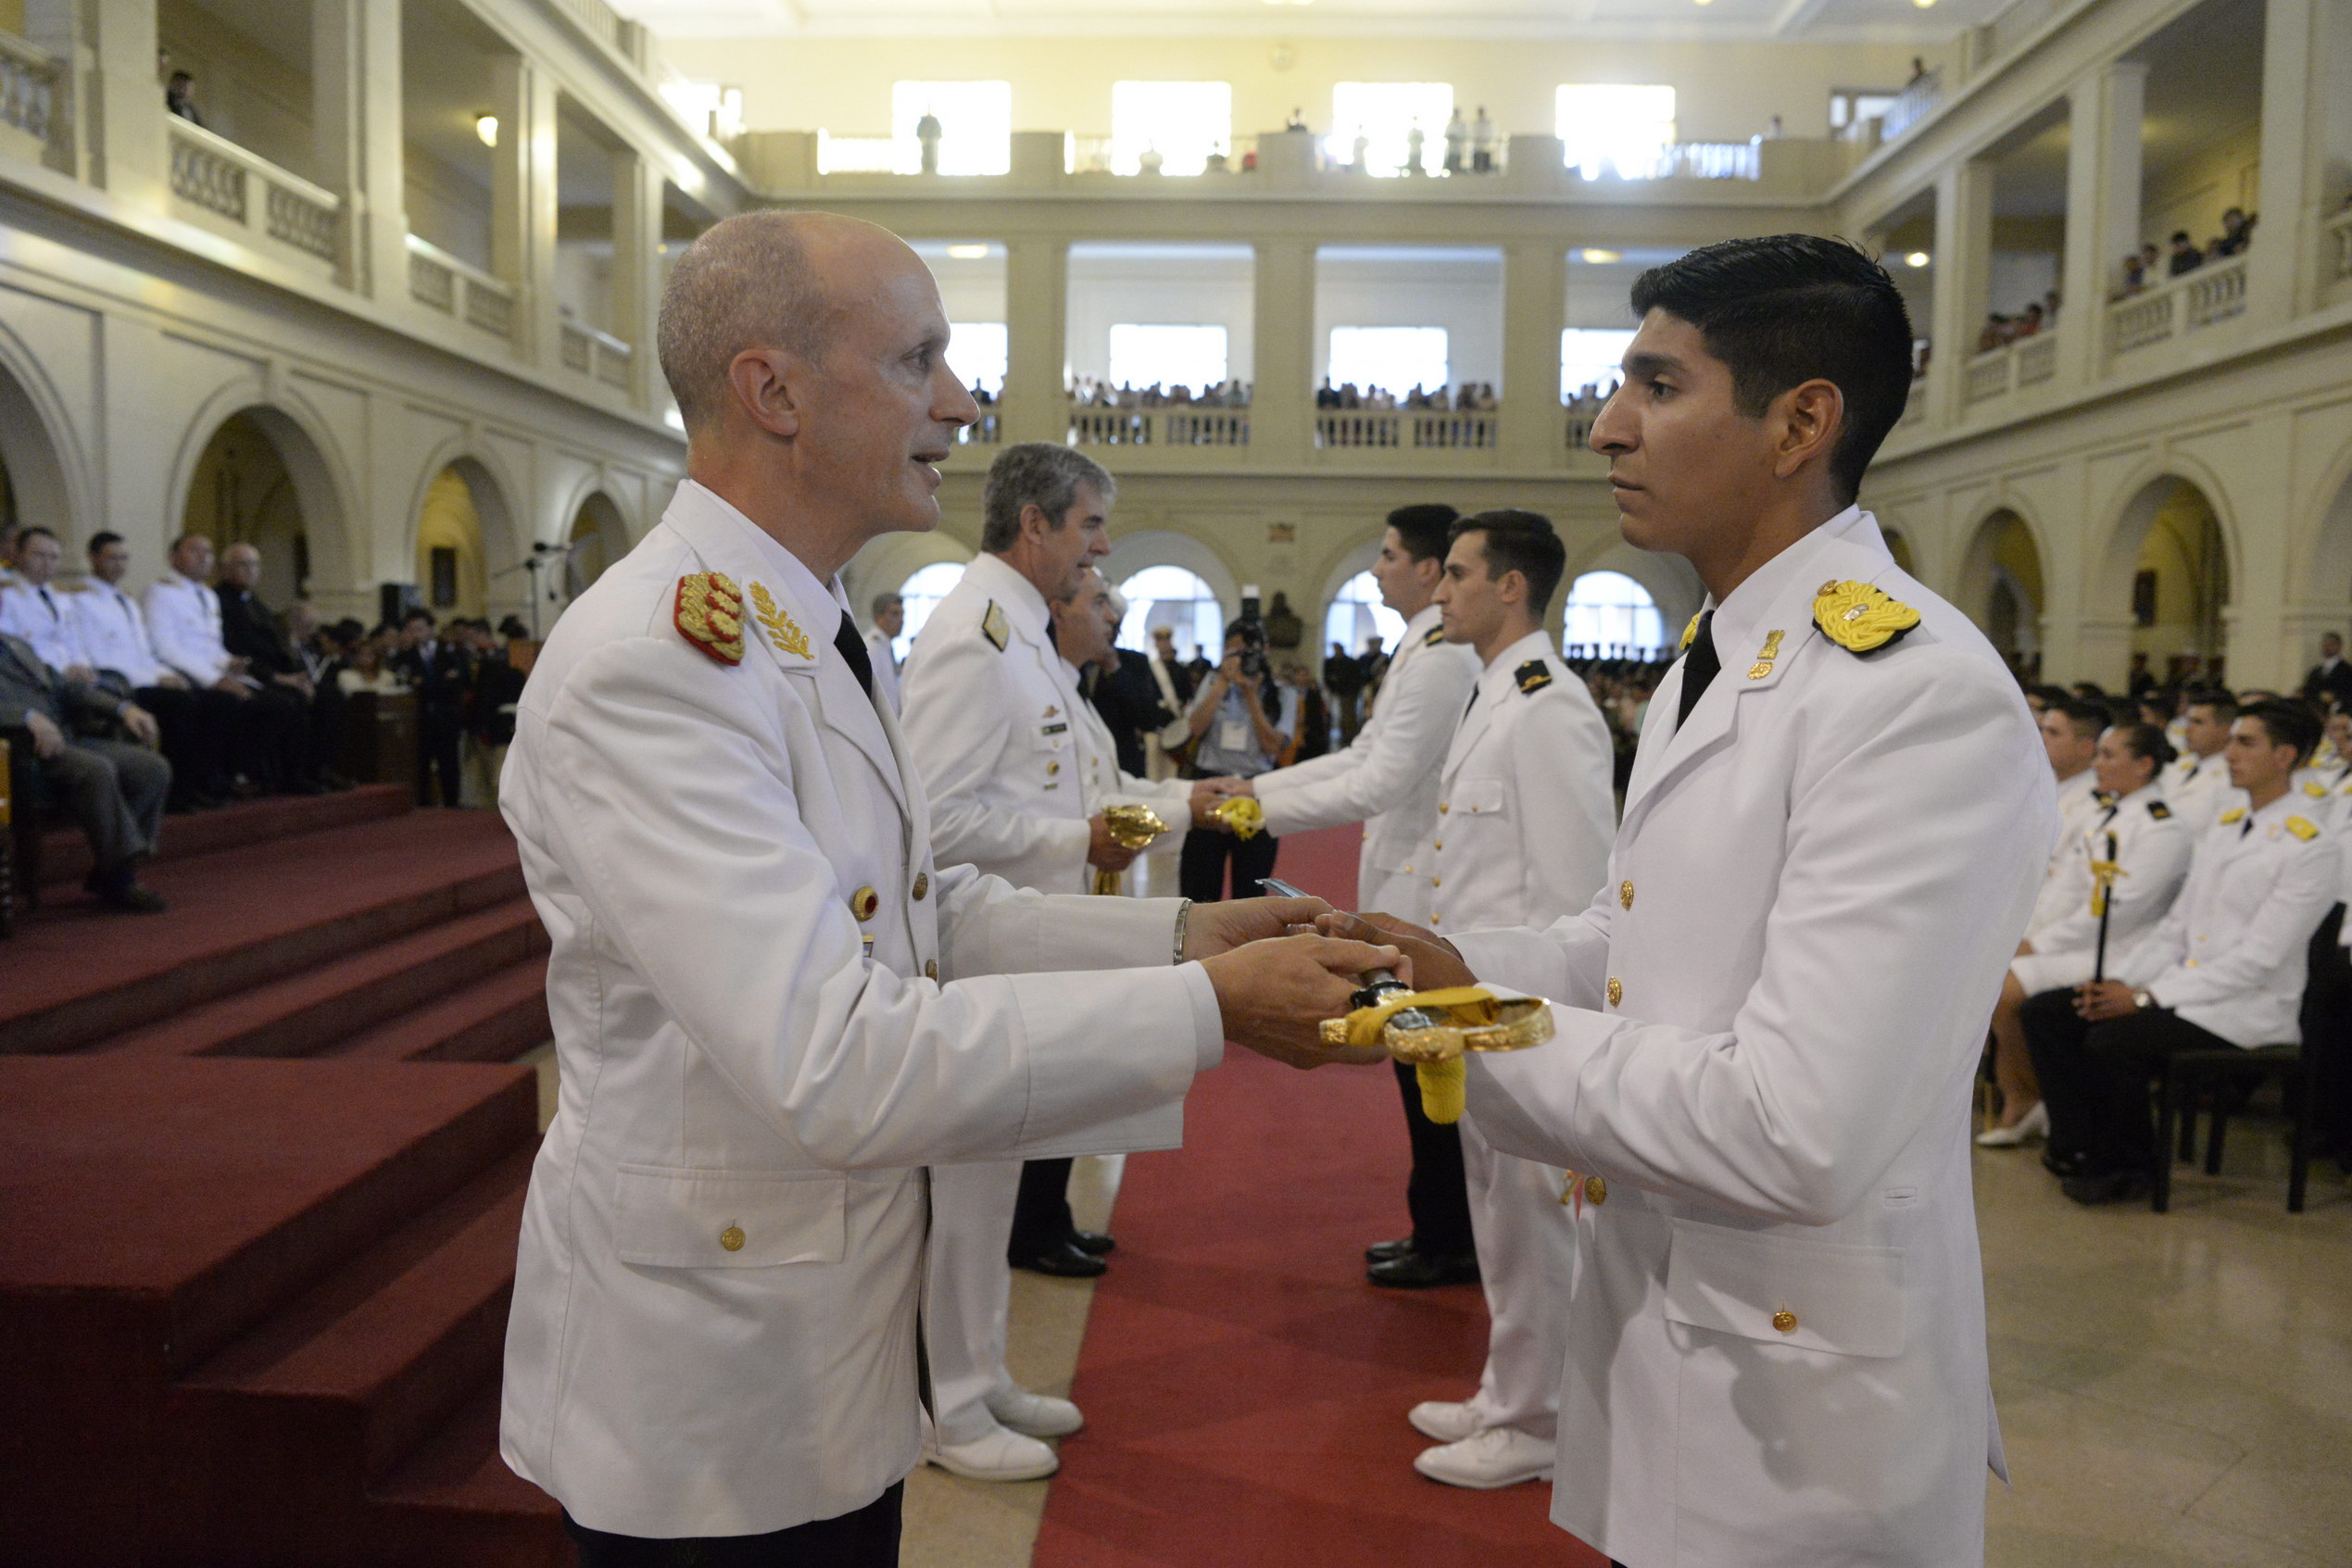 El subteniente Adrián Facundo Maraz recibe su sable de manos del jefe del Ejército, general de división Claudio Ernesto Pasqualini